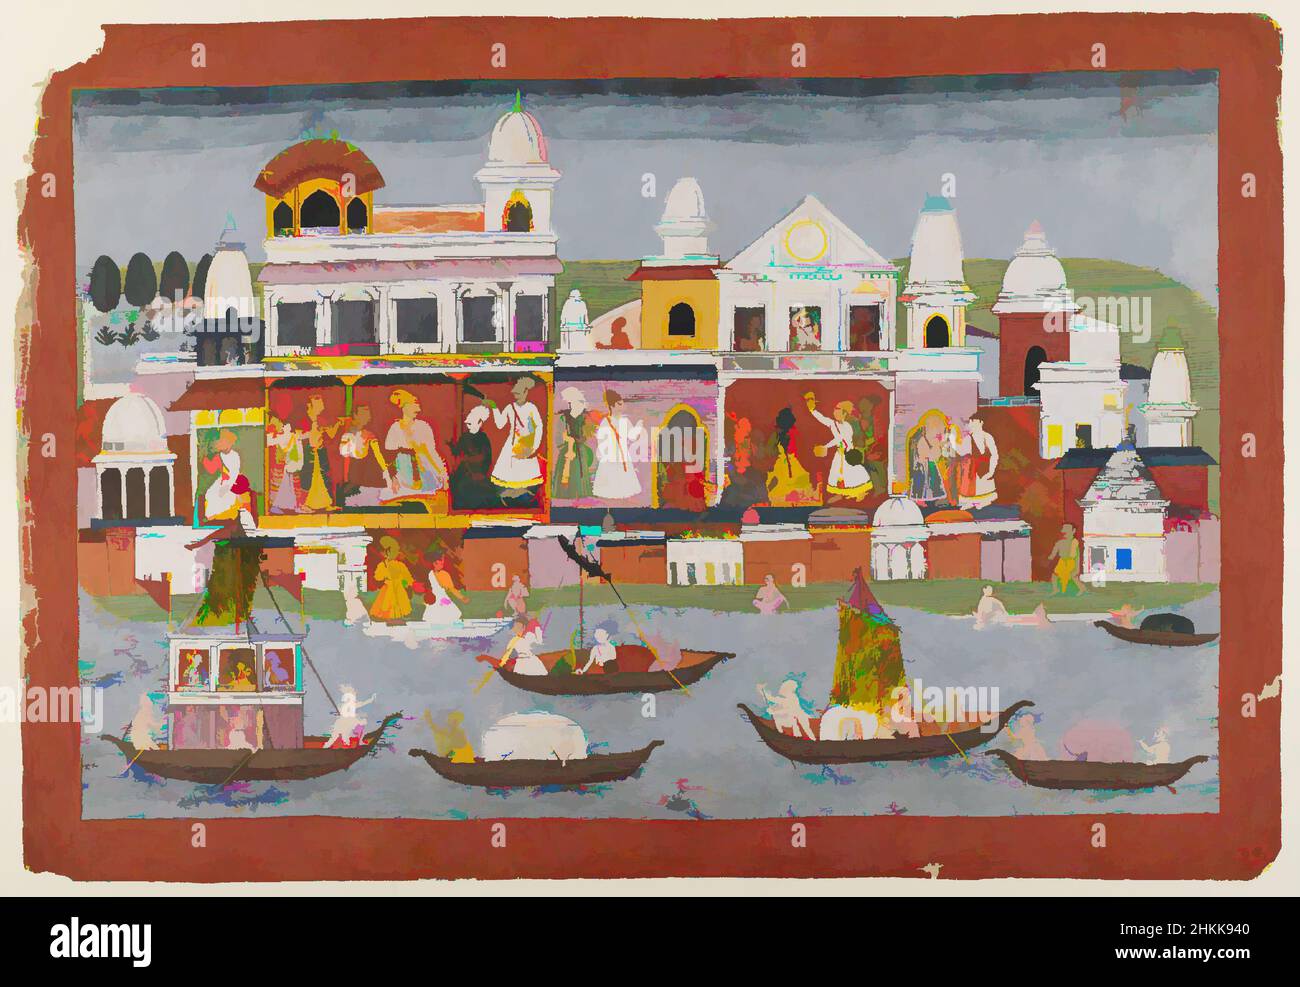 Art inspiré par page d'une série Bhagavata Purana, aquarelles opaques sur papier, Népal, ca. 1775-1800, 12 1/2 x 19 1/4 po, 31,8 x 48,9 cm, œuvres classiques modernisées par Artotop avec une touche de modernité. Formes, couleur et valeur, impact visuel accrocheur sur l'art émotions par la liberté d'œuvres d'art d'une manière contemporaine. Un message intemporel qui cherche une nouvelle direction créative. Artistes qui se tournent vers le support numérique et créent le NFT Artotop Banque D'Images